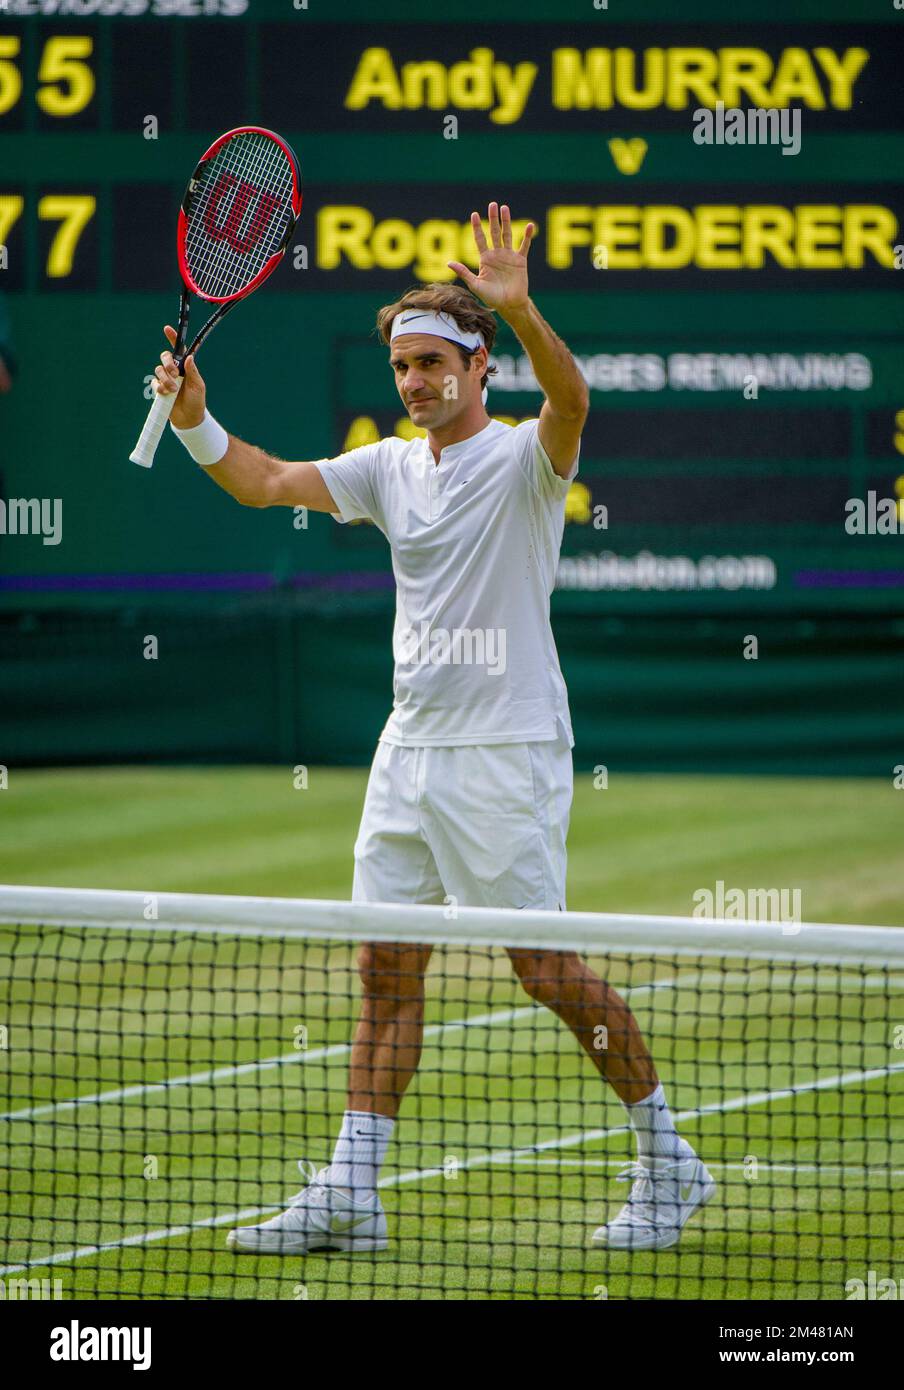 Championnats de Wimbledon 2015, Roger Federer célèbre après avoir battu Andy Murray dans la demi-finale hommes-célibataires sur le court du Centre. Banque D'Images